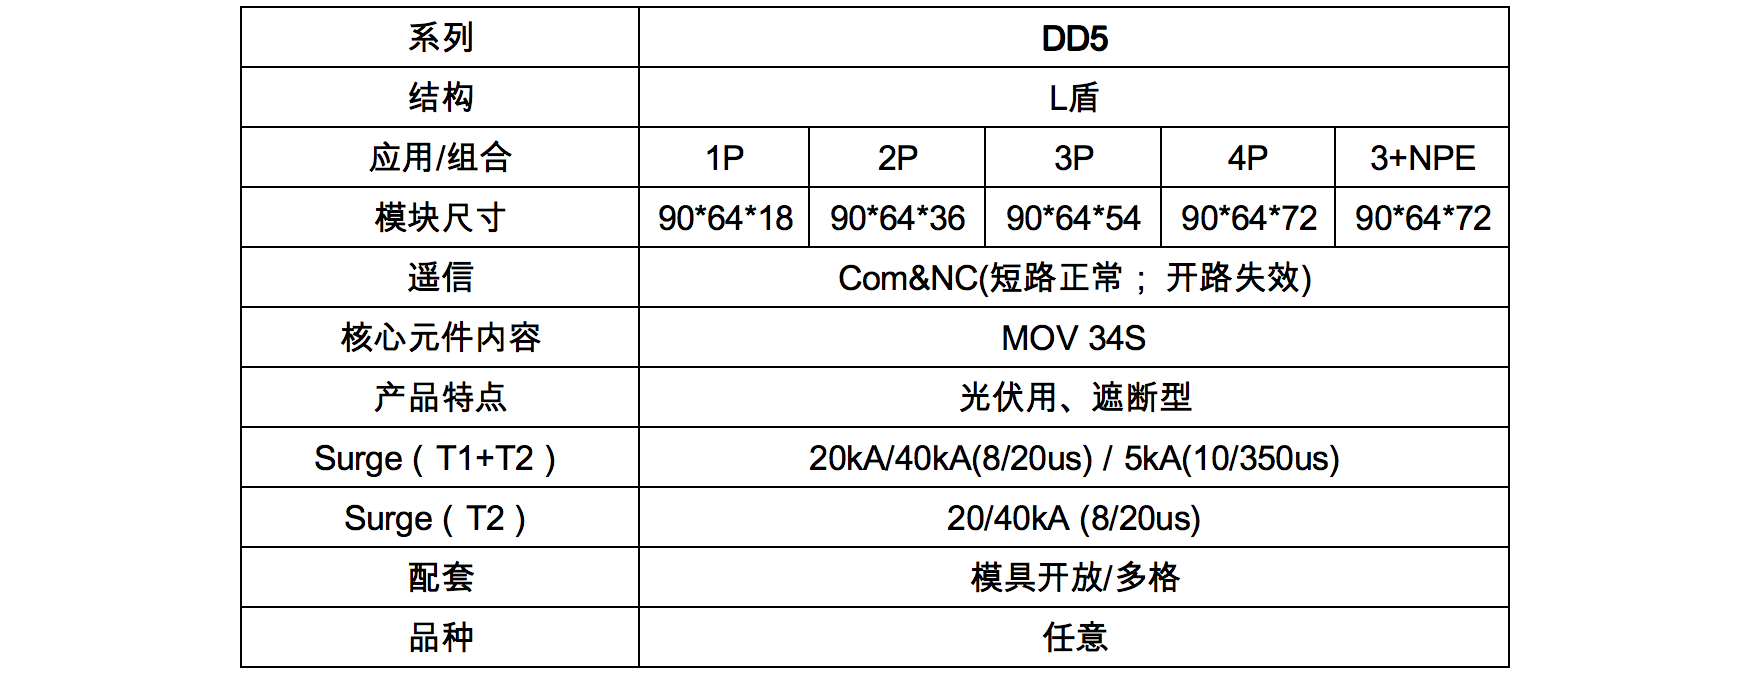 DD5规格表.png